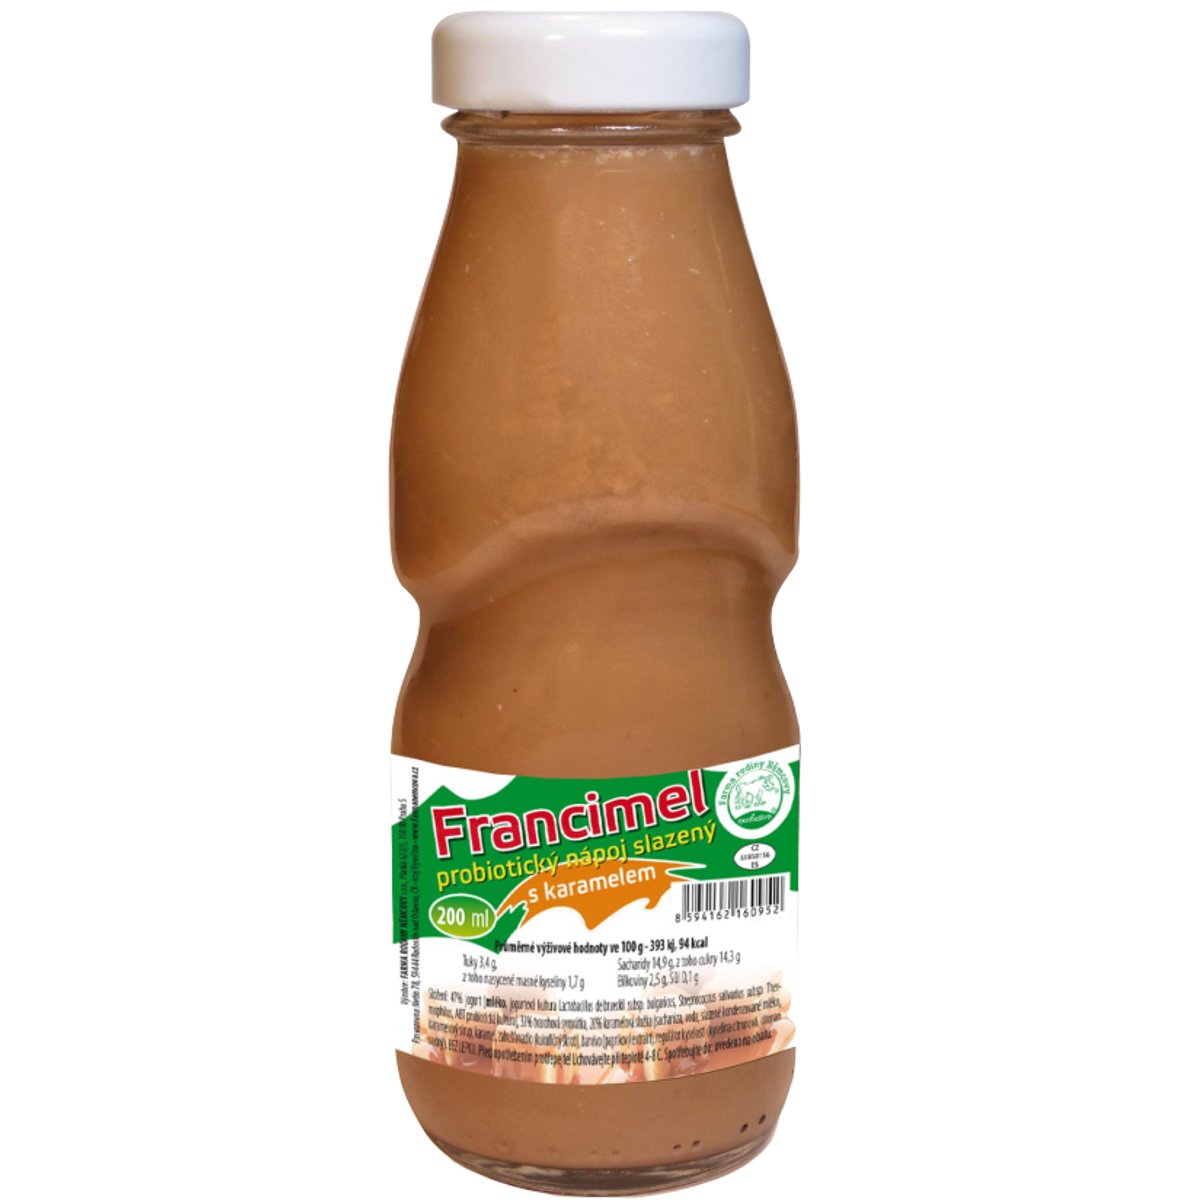 Farma rodiny Němcovy Francimel probiotický nápoj s karamelem v akci